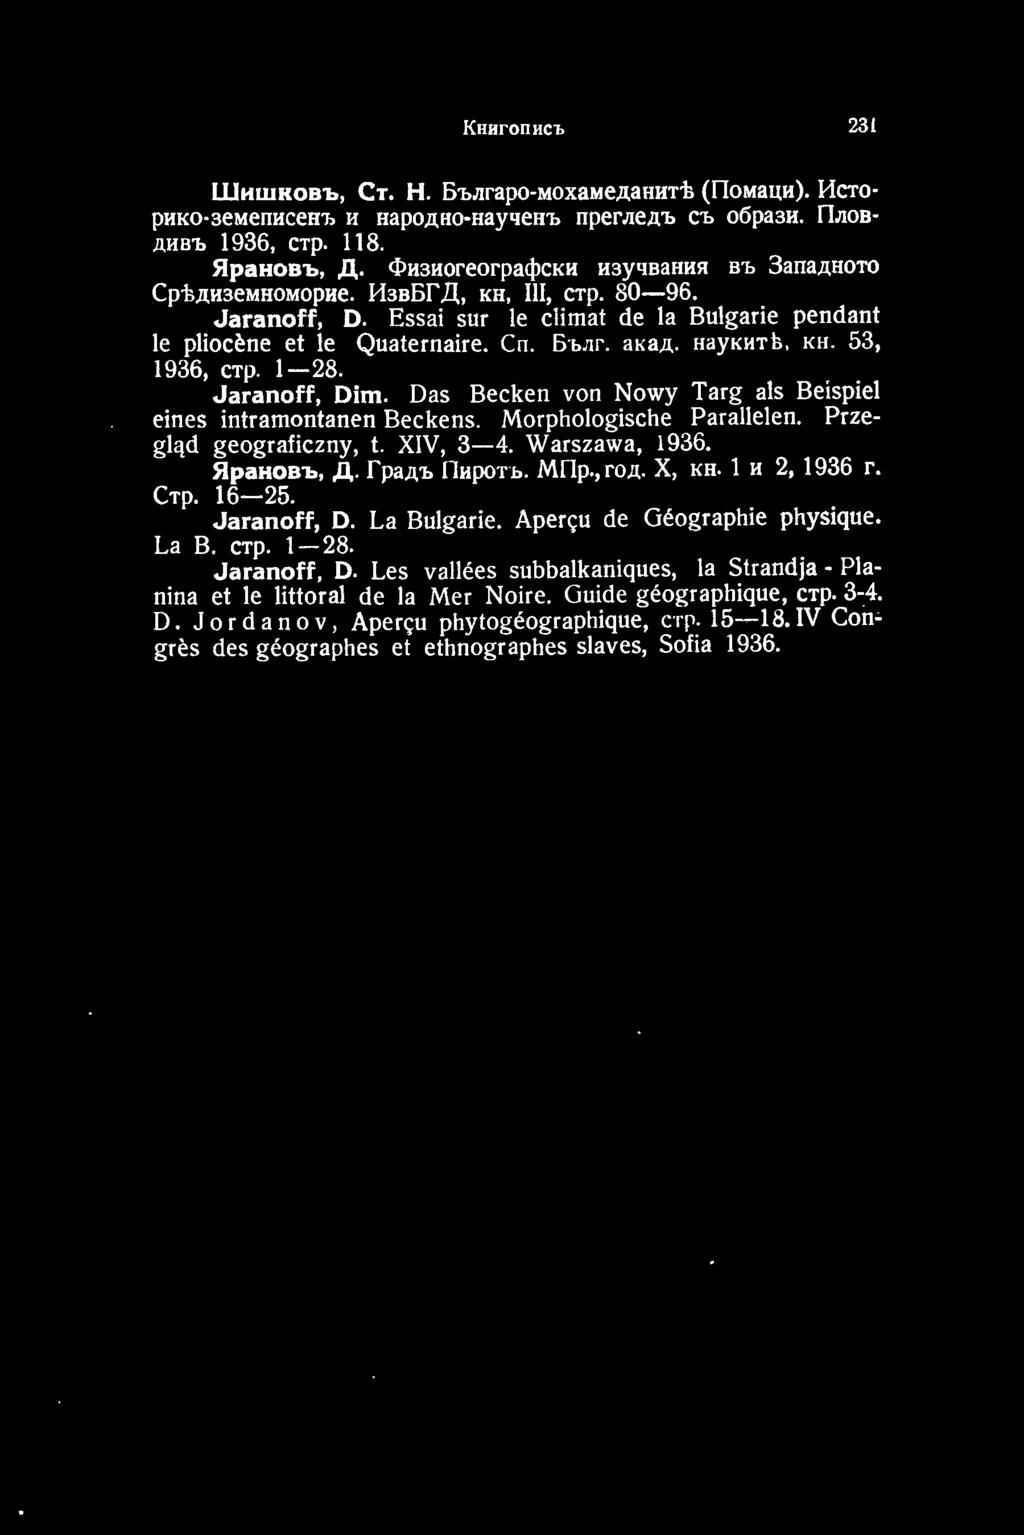 Ярановъ, Д. Градъ Пиротъ. Mllp., rод. Х, кн. 1 и 2, 1936 г. Стр. 16-25. Jaranoff, D. La Bulgarie. Aper<;u de Geographie physique. La В. стр. 1-28.